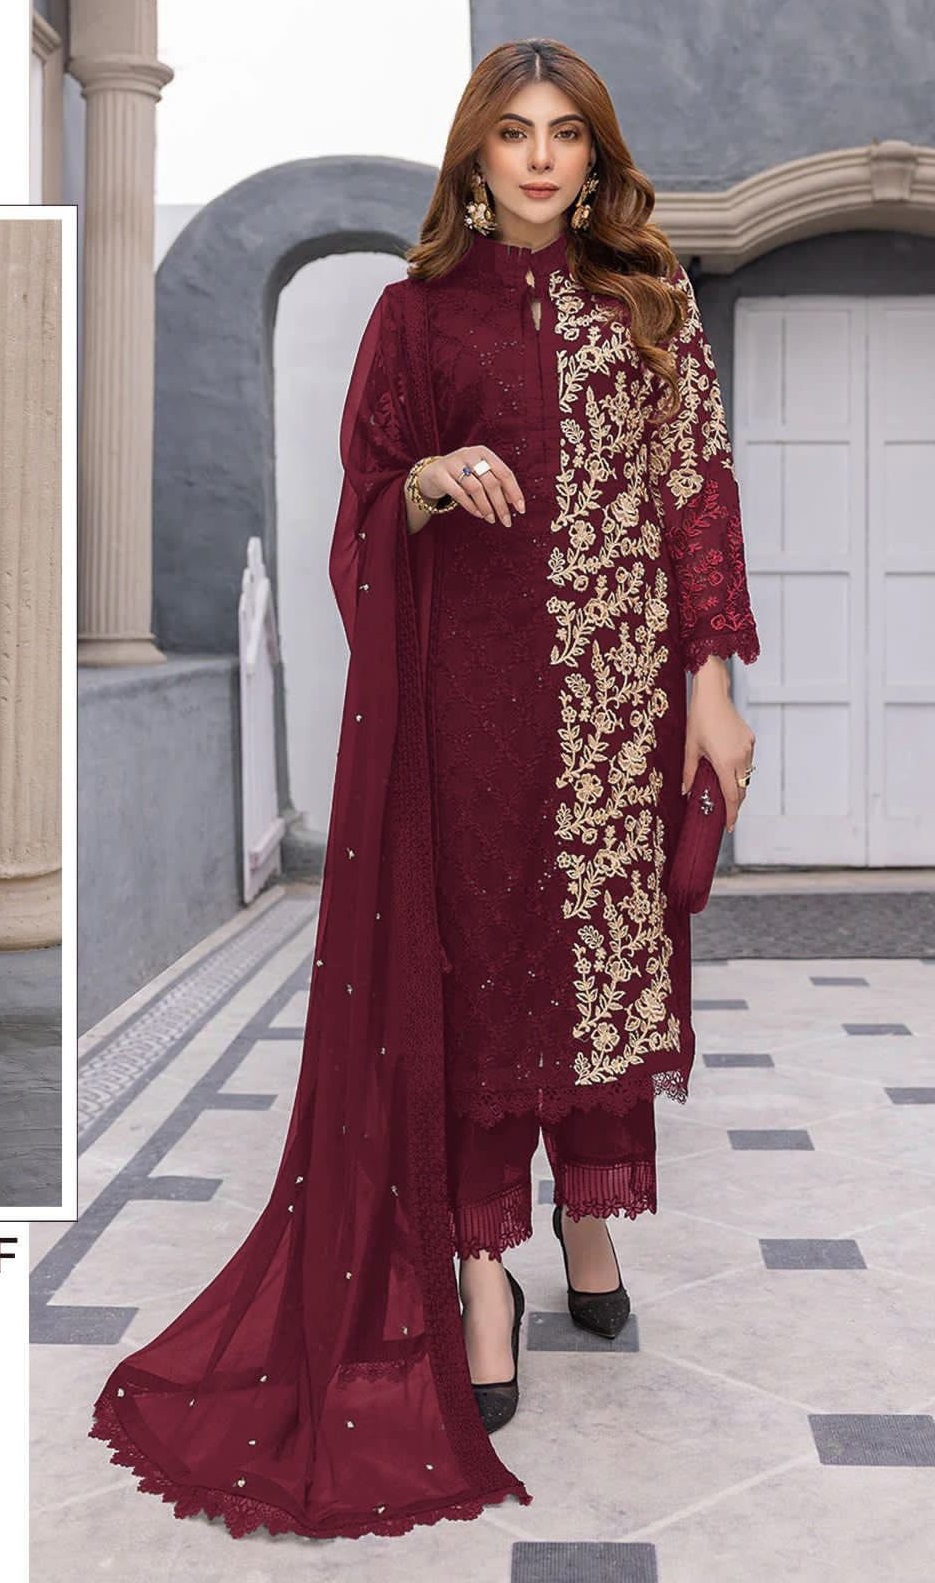 Serine S 216 Colors Designer New Pakistani Suit Online Sales Dealers